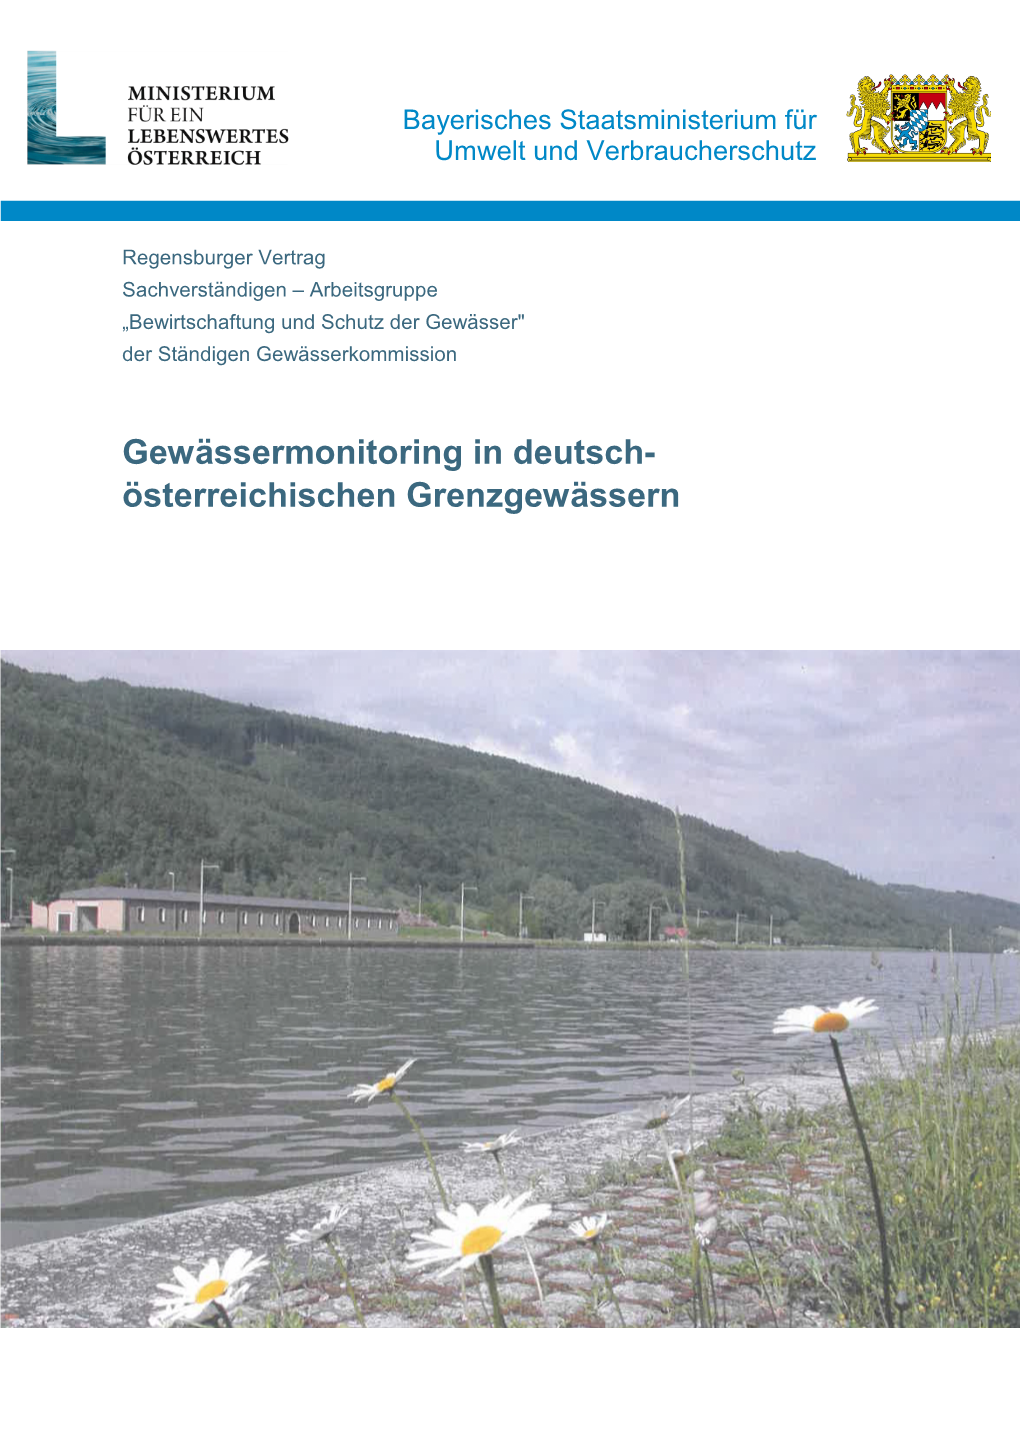 Gewässermonitoring in Deutsch-Österreichischen Grenzgewässern